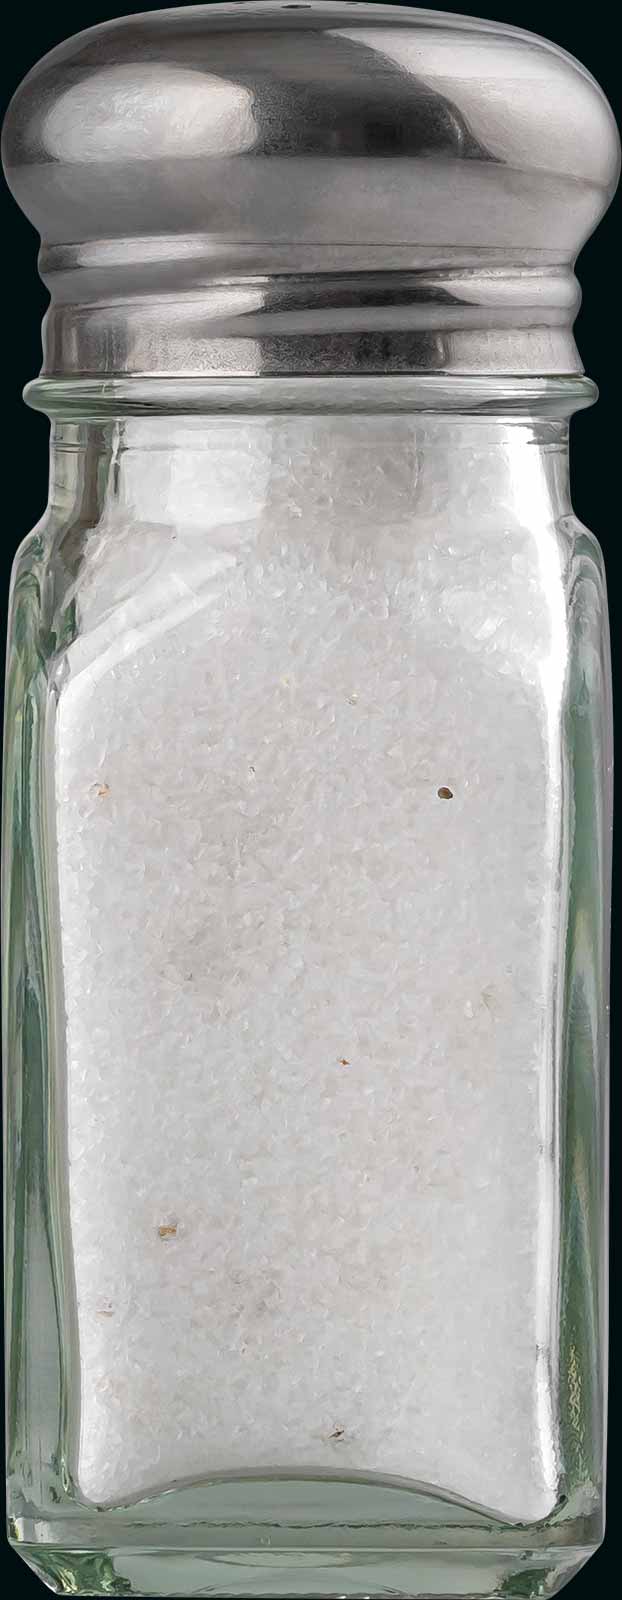 Dirty salt in a table salt shaker